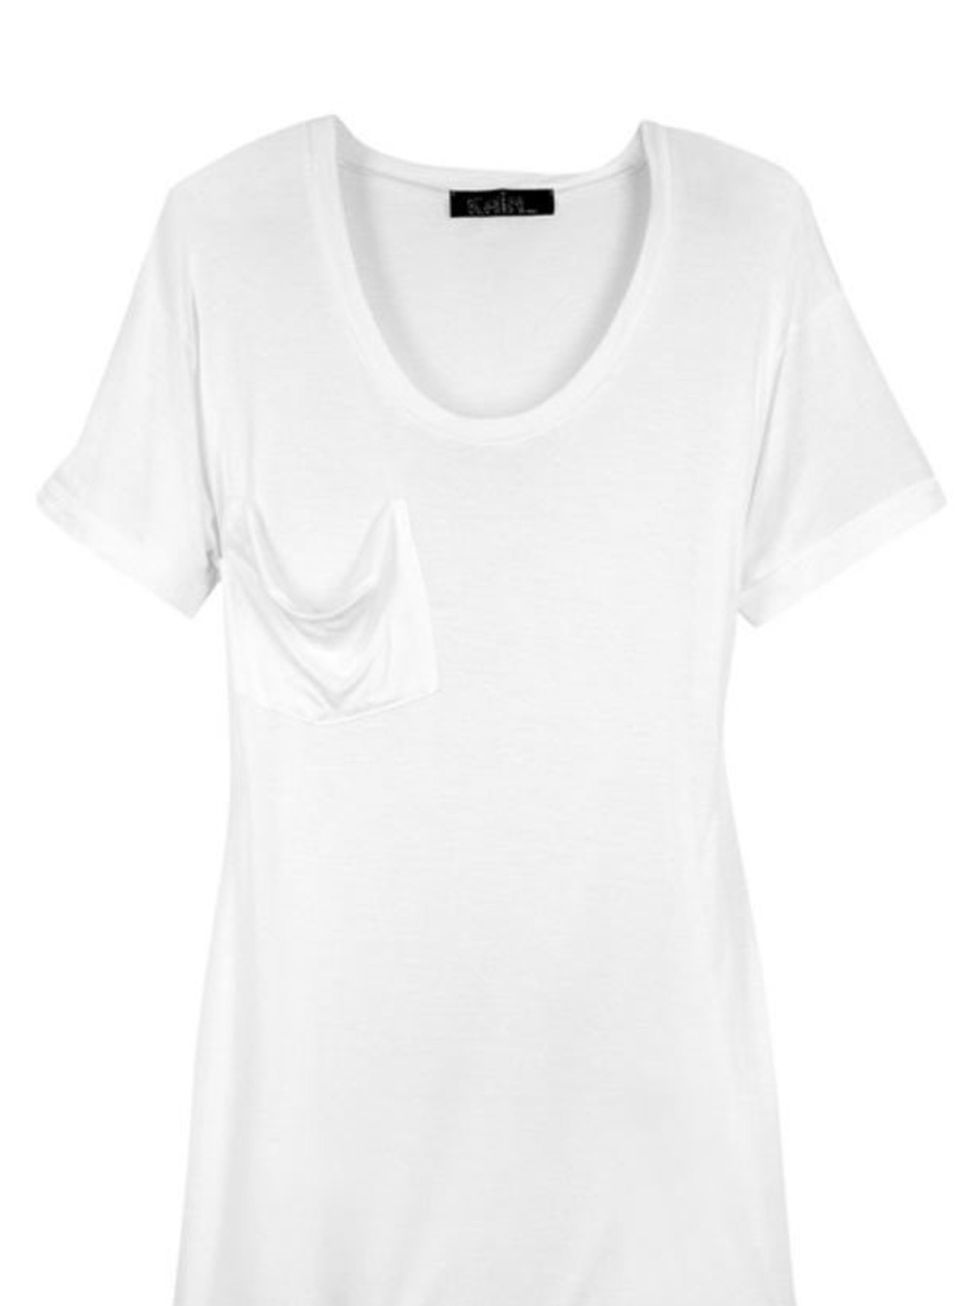 <p>Kain modal &amp; silk-blend t-shirt, £70, at <a href="http://www.net-a-porter.com/product/80398">Net-a-Porter</a></p>